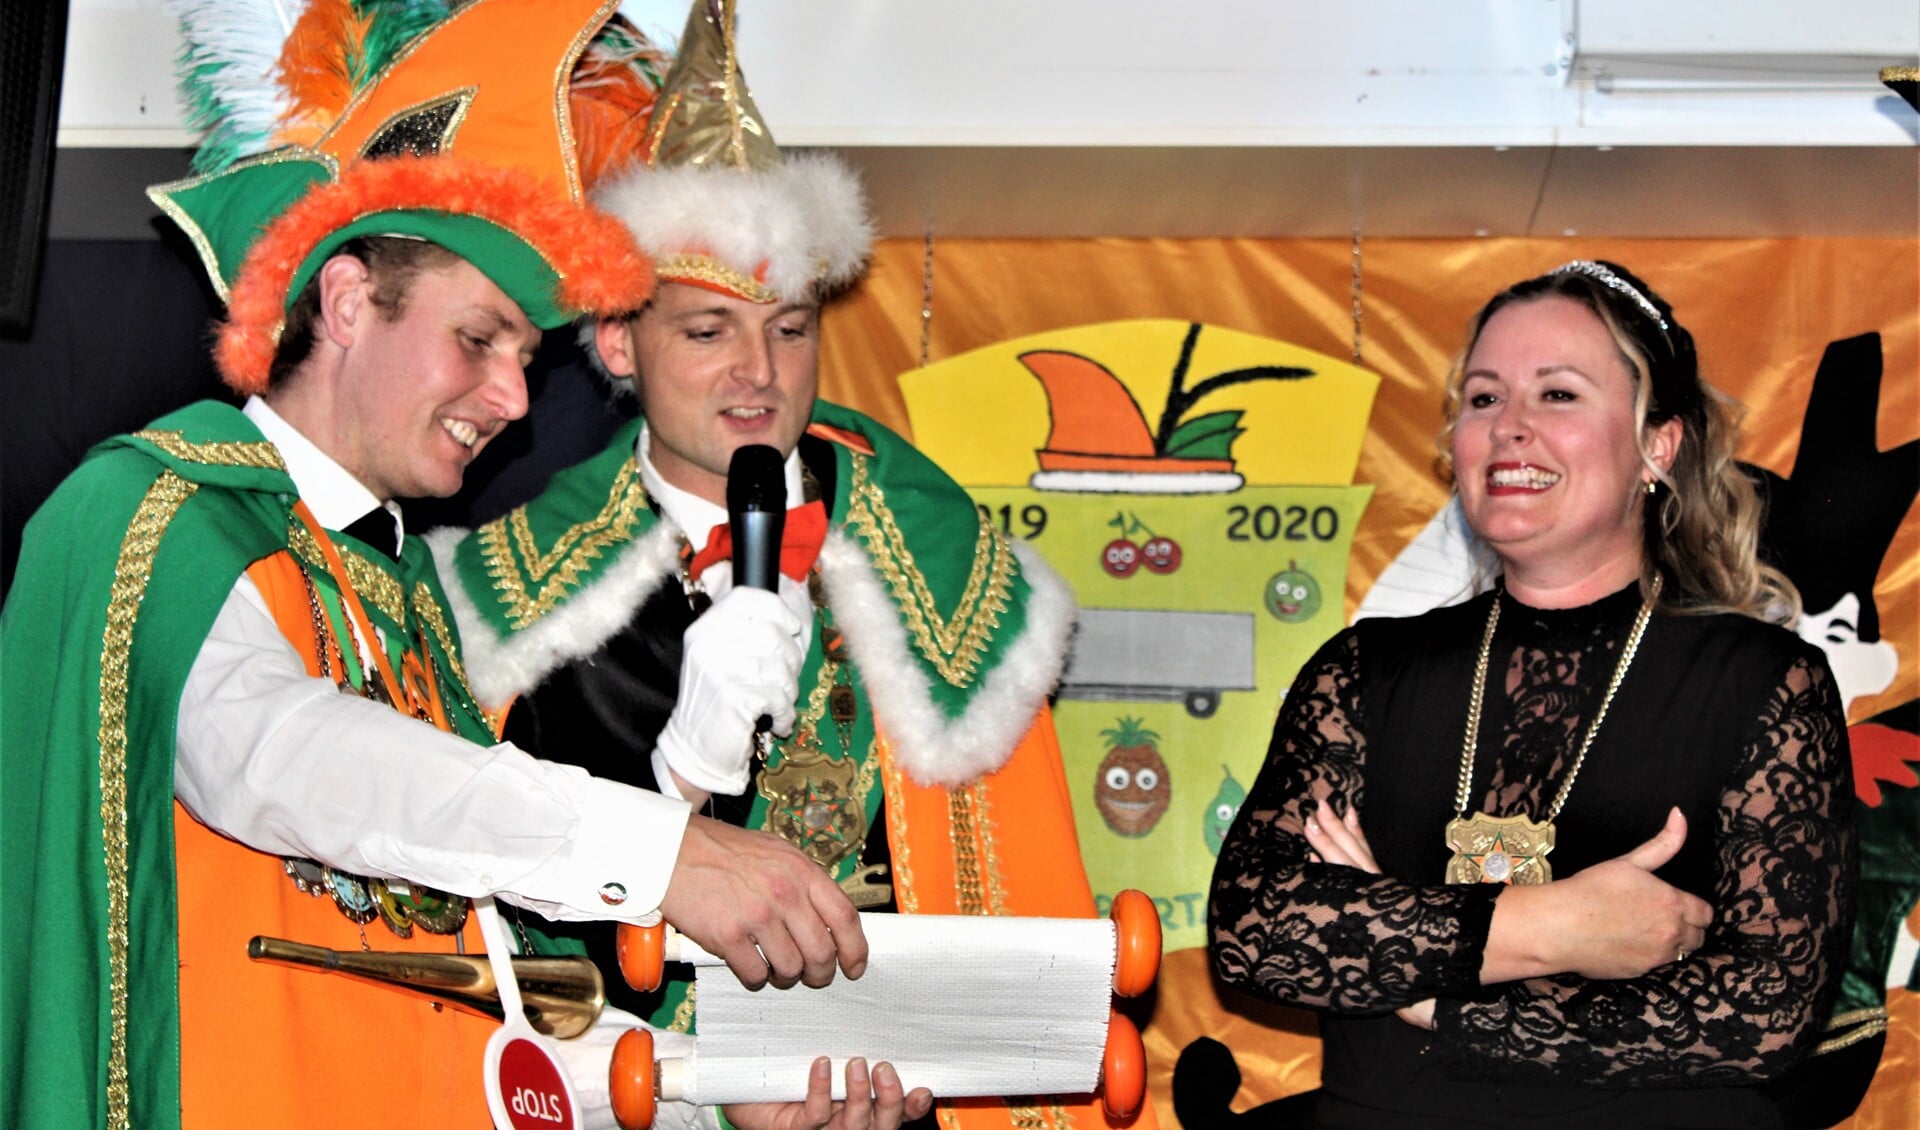 Het nieuwe prinsenpaar Prins Transportador (Remko Kloosterman) en Page Silke (van Hagen) werd gepresenteerd (foto: pr Damzwabbers).